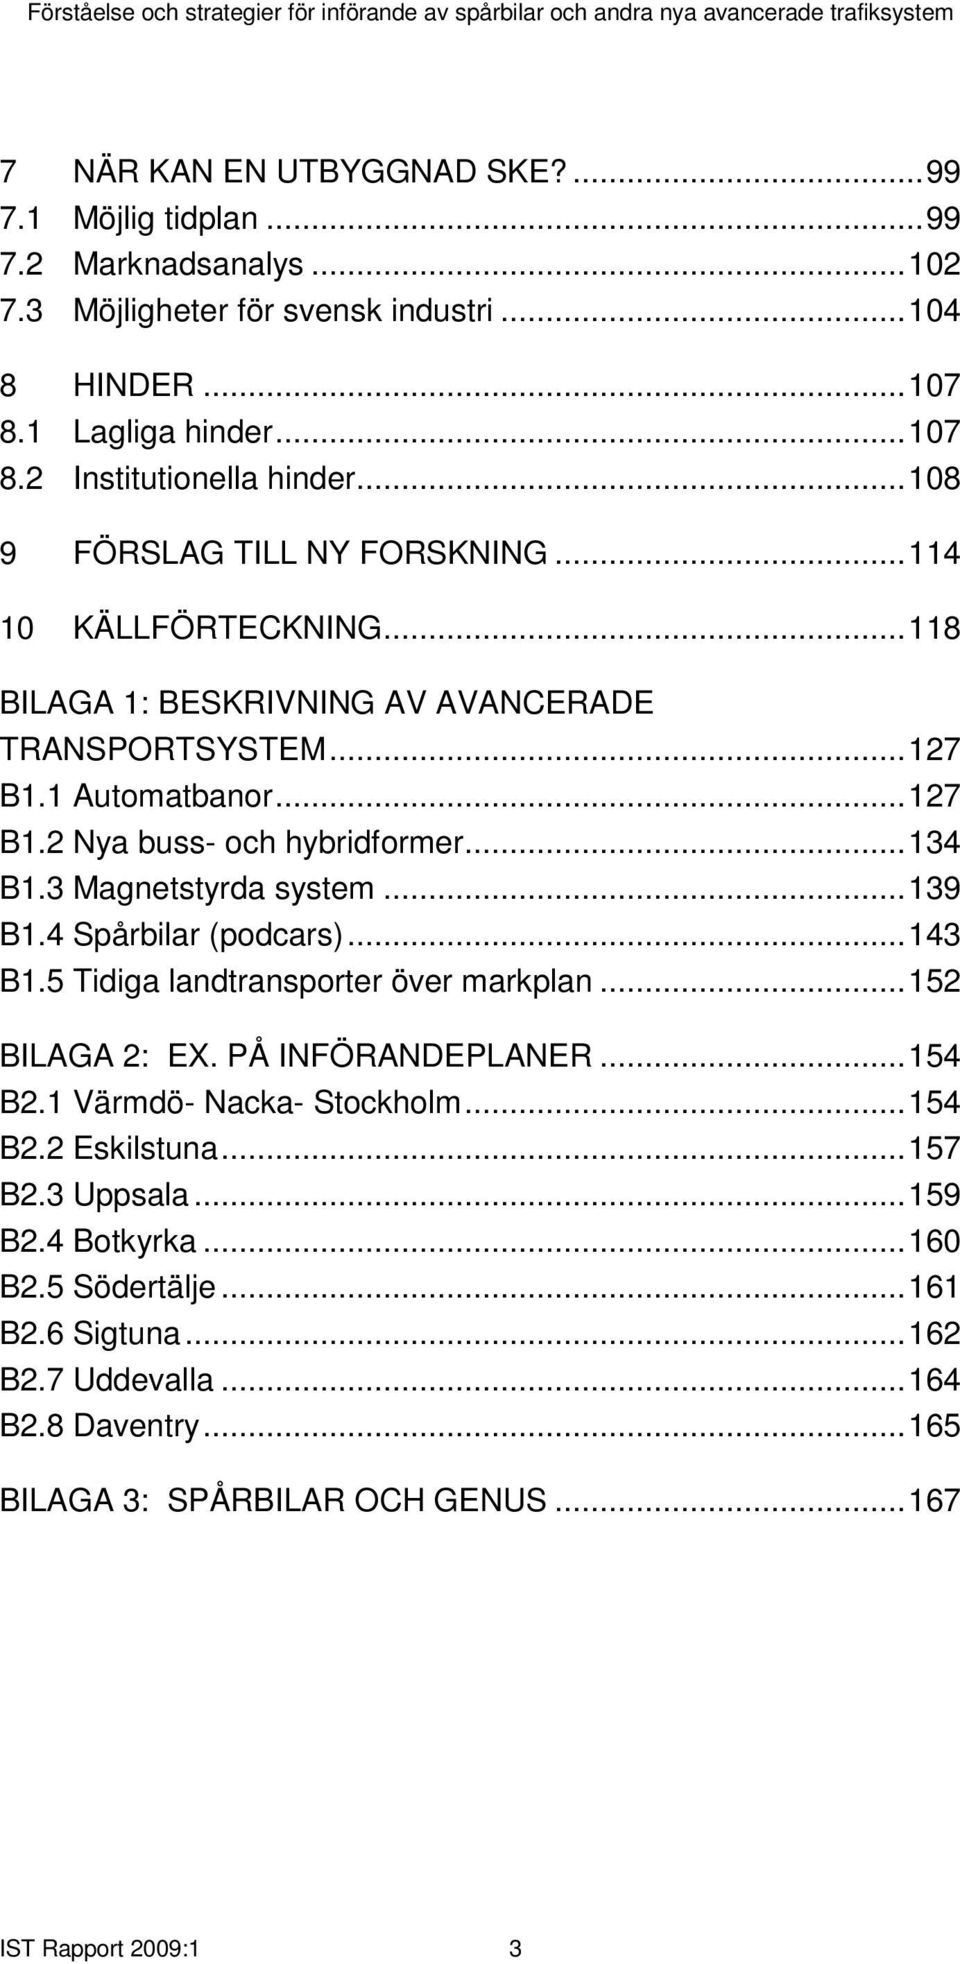 3 Magnetstyrda system...139 B1.4 Spårbilar (podcars)...143 B1.5 Tidiga landtransporter över markplan...152 BILAGA 2: EX. PÅ INFÖRANDEPLANER...154 B2.1 Värmdö- Nacka- Stockholm...154 B2.2 Eskilstuna.